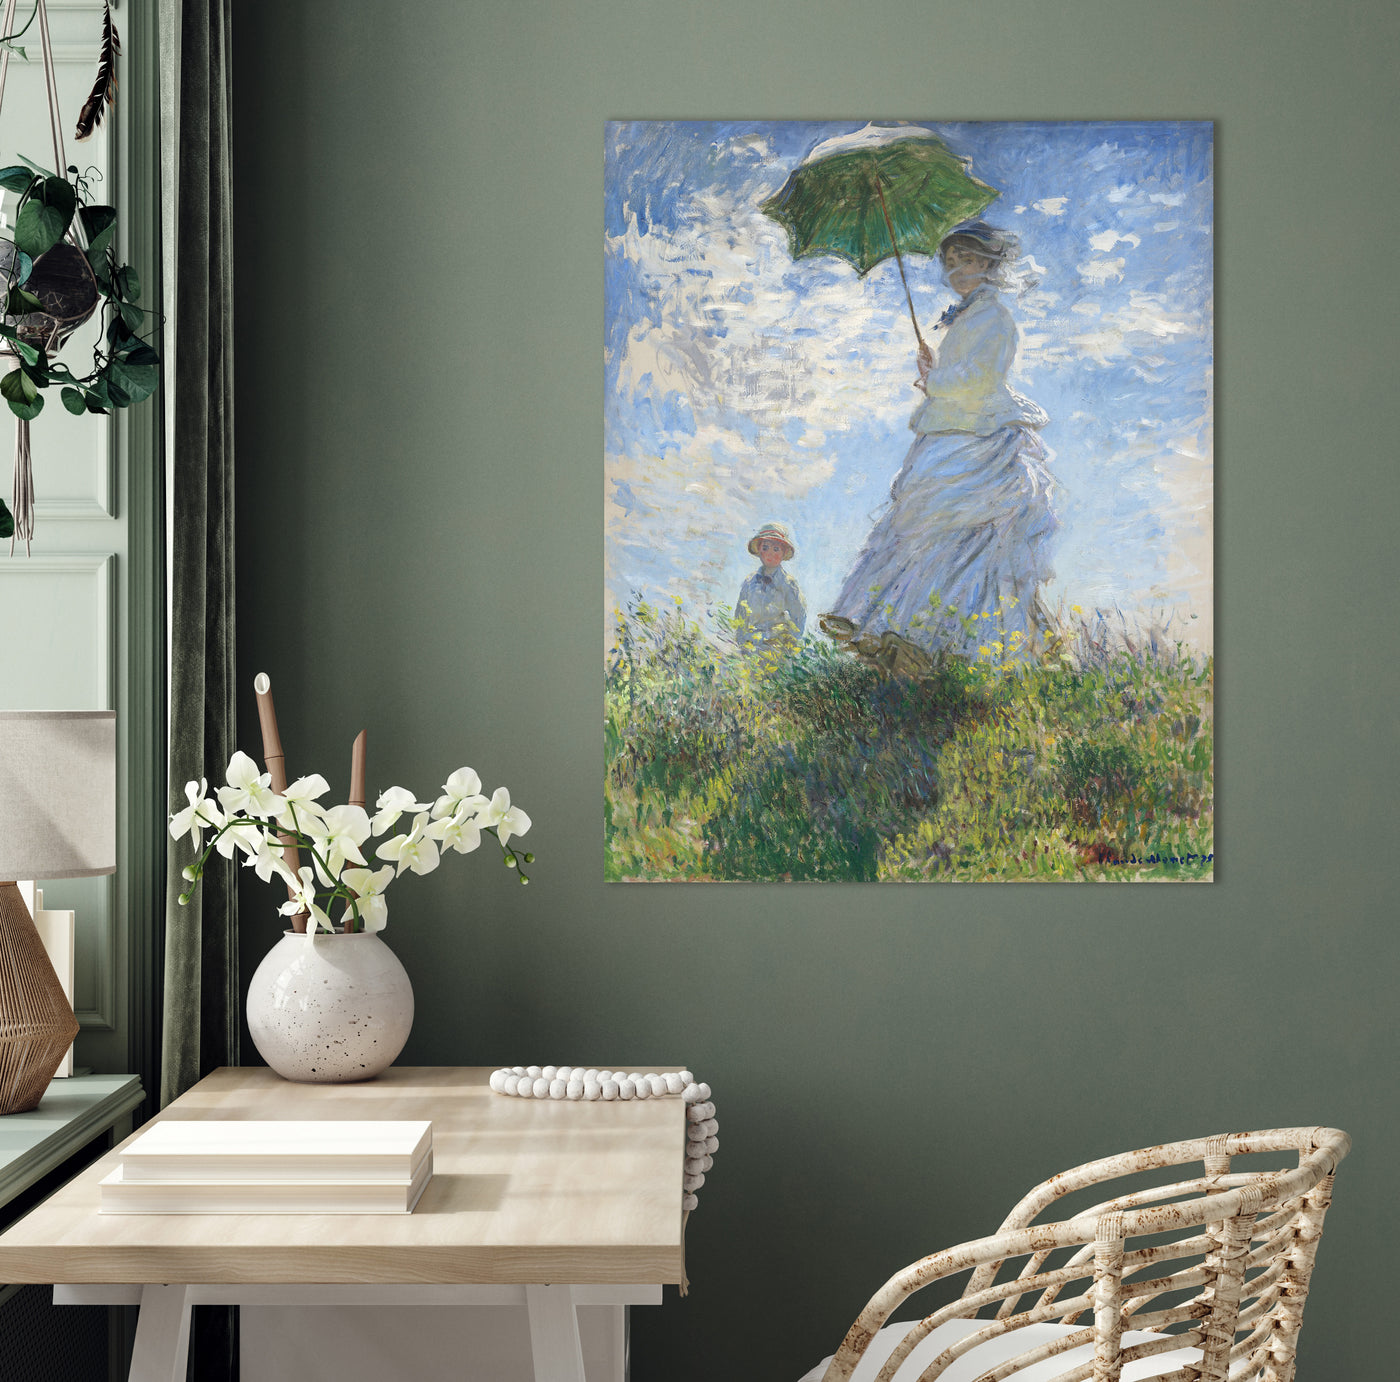 Vrouw met een parasol - Madame Monet en haar zoon - Claude Monet